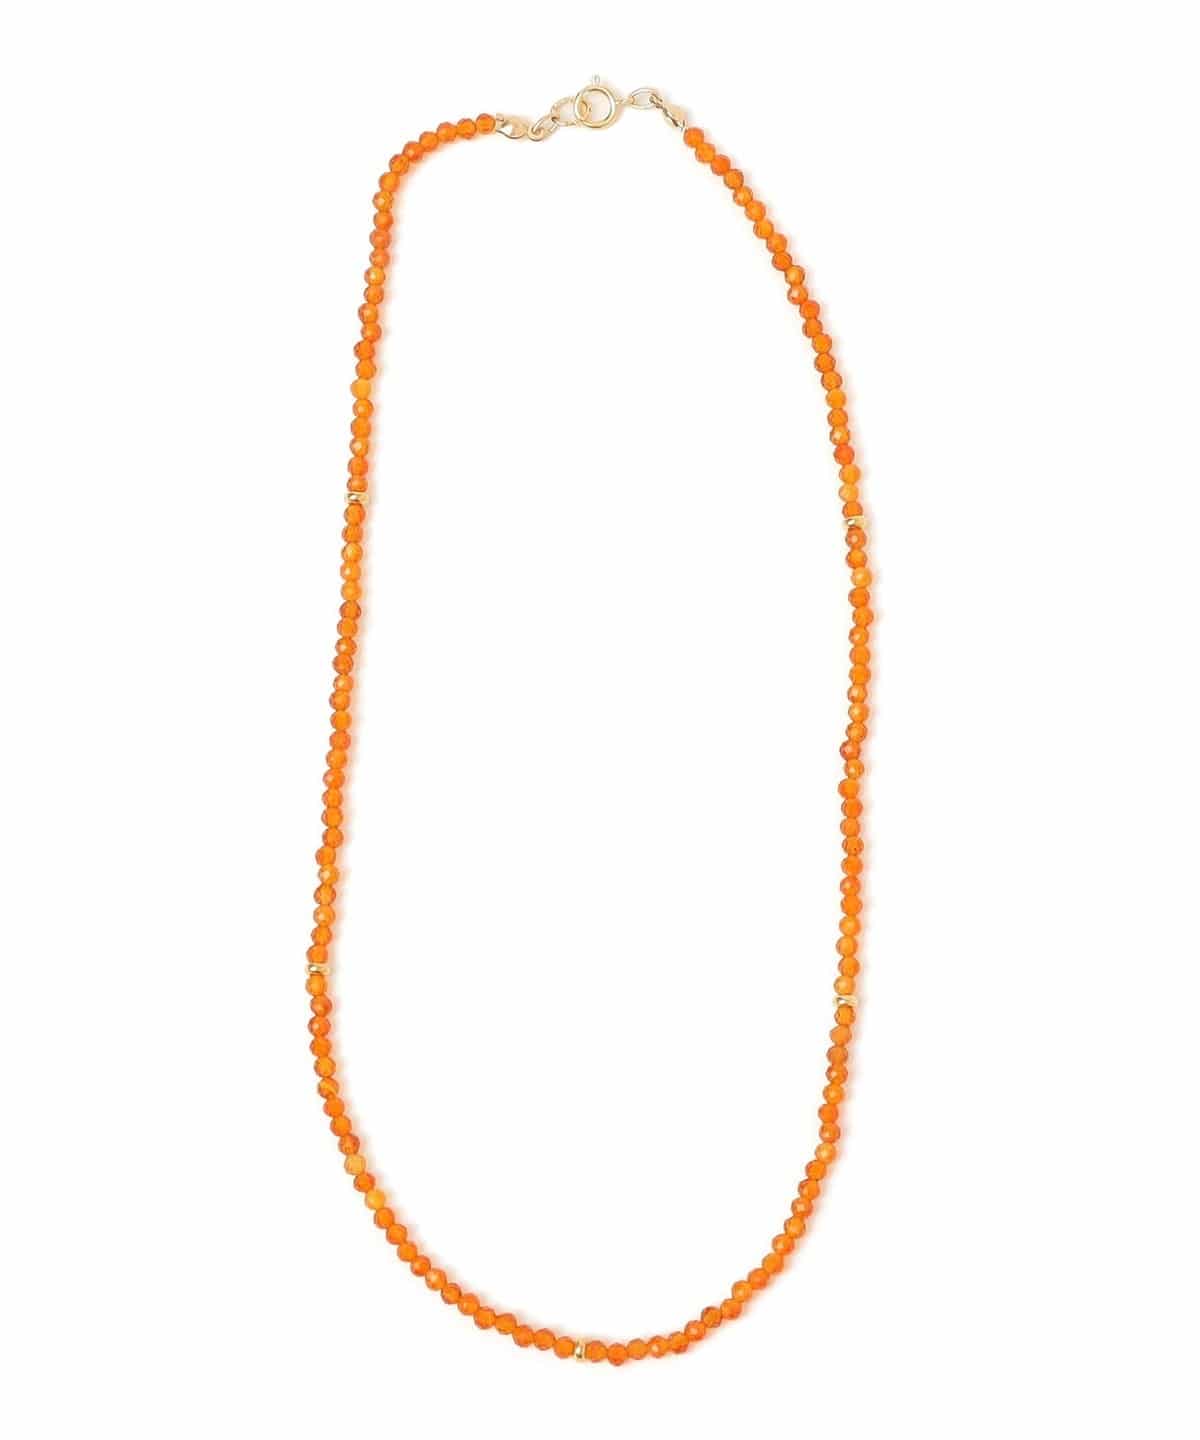 CONSOLER: オレンジ ショート ネックレス オレンジ